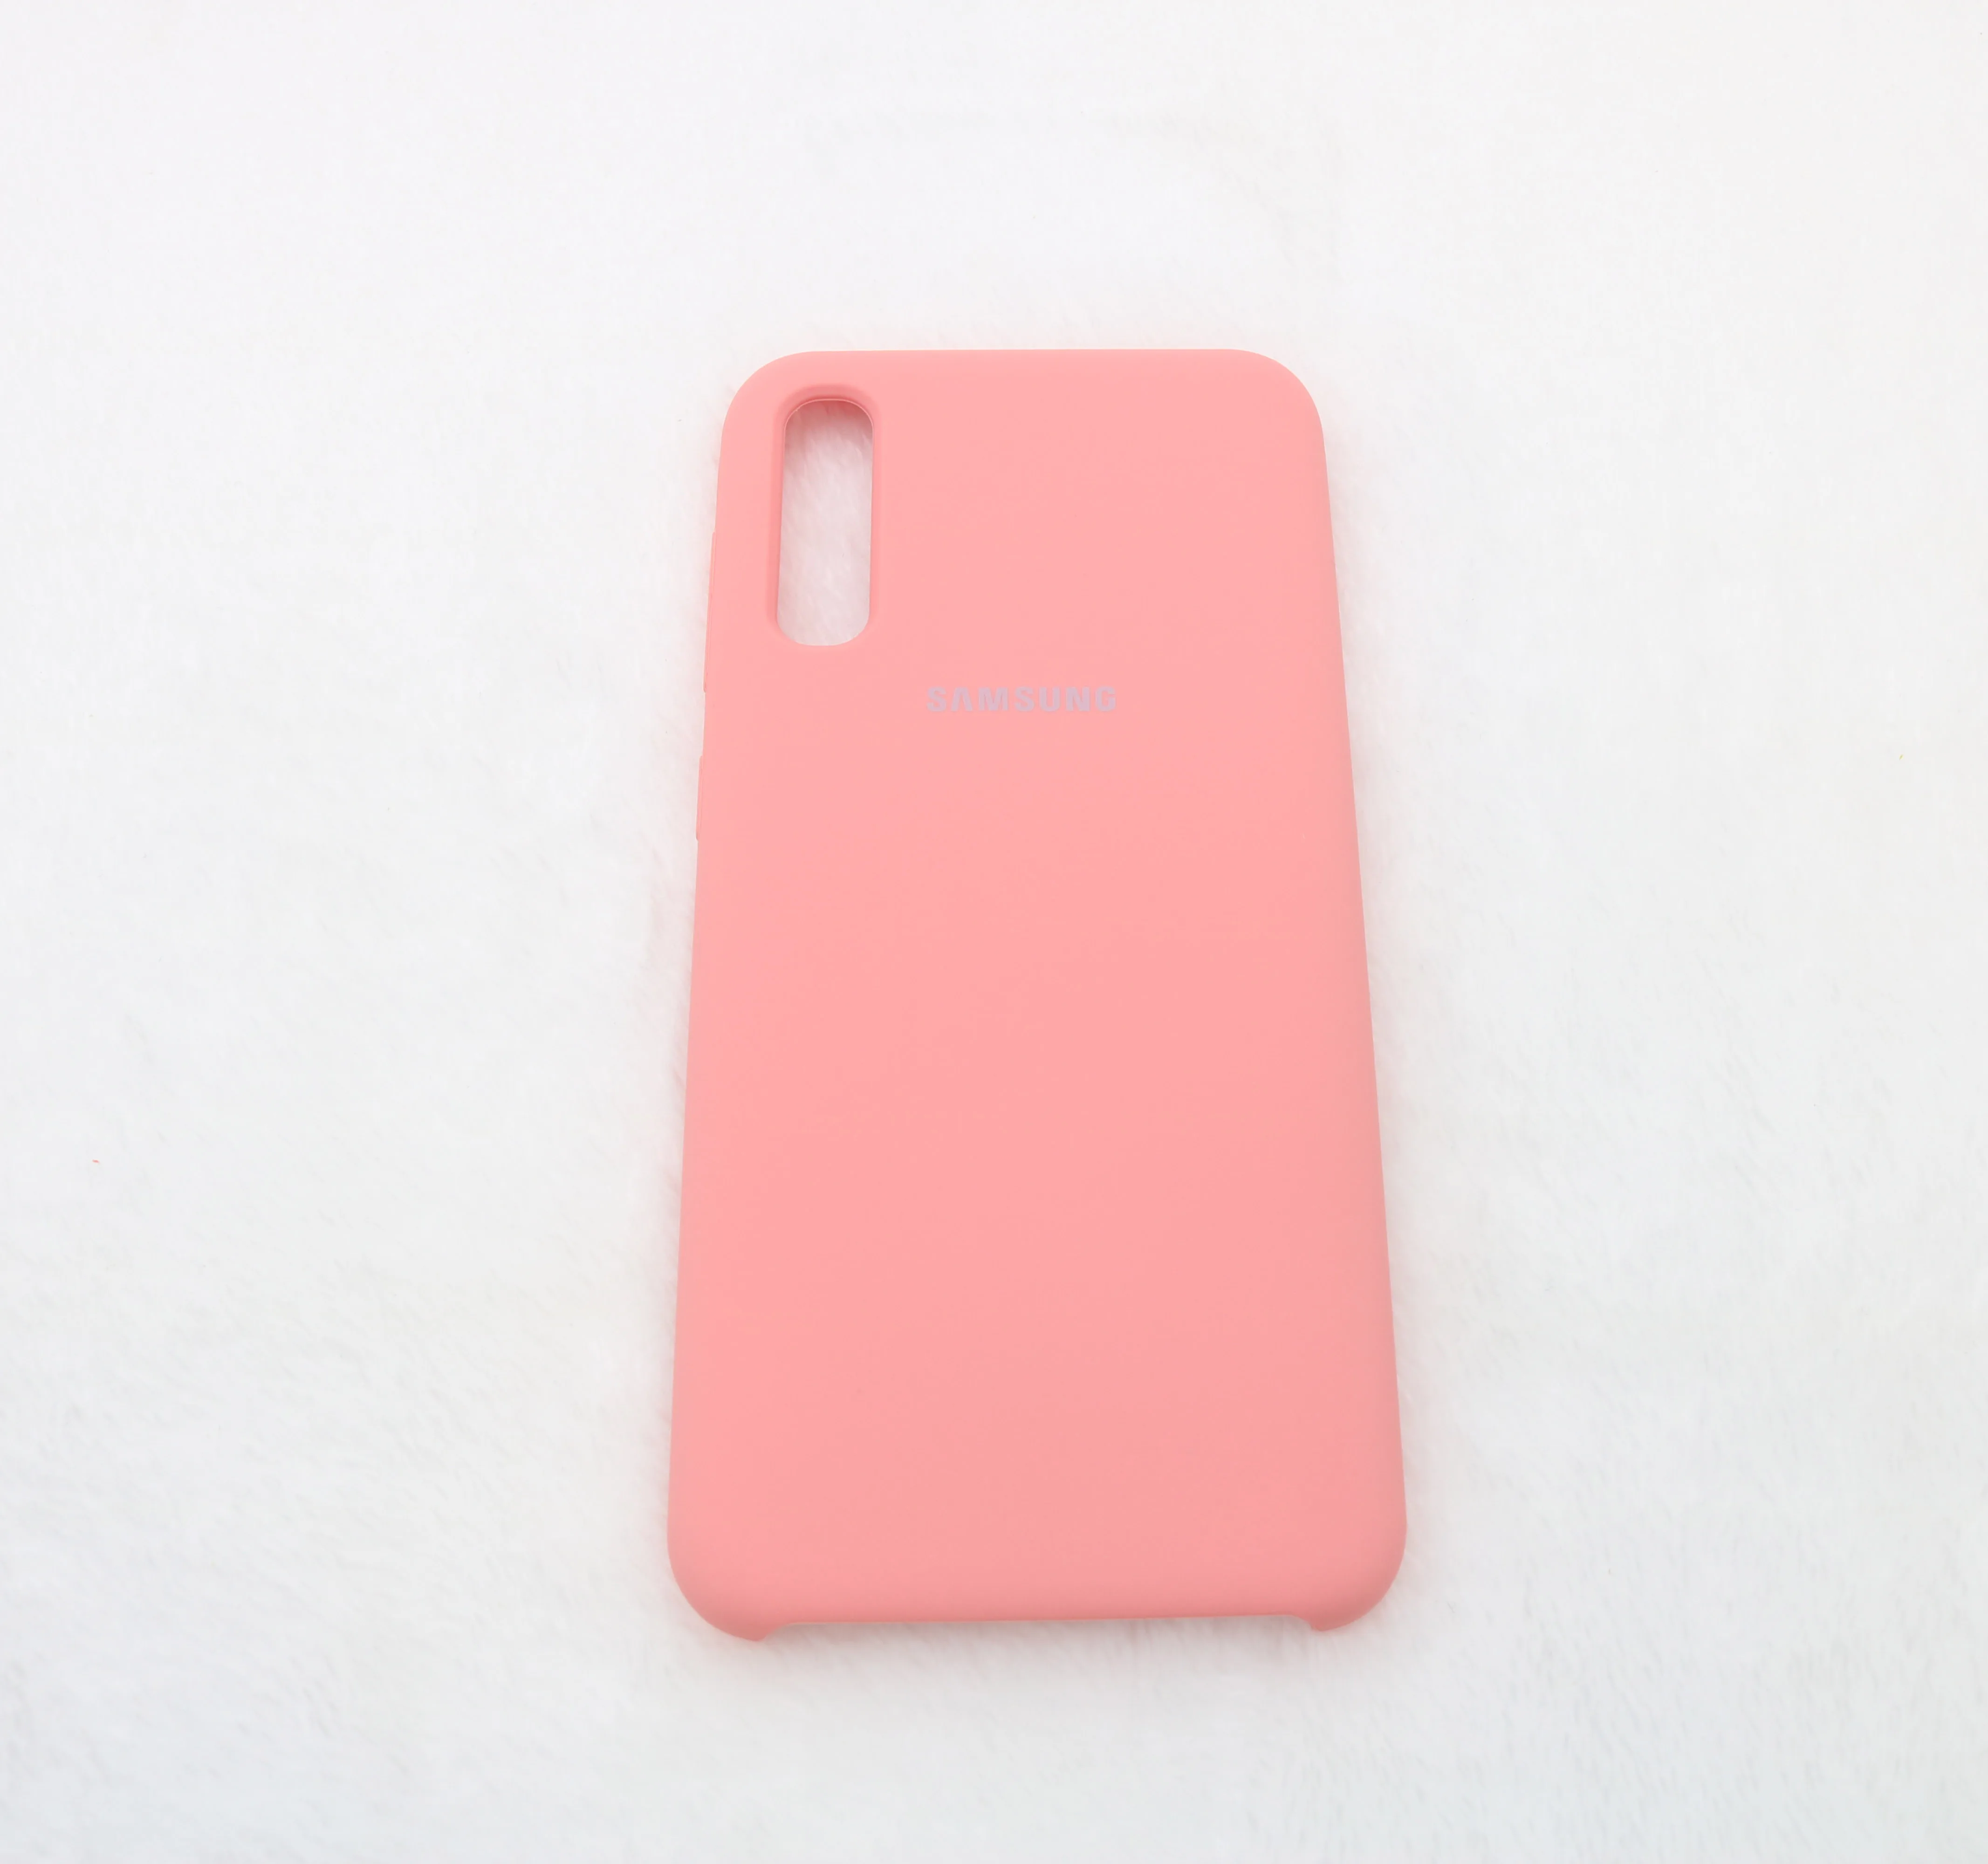 Для samsung Galaxy A50 чехол силиконовый Рождественский задняя крышка чехол для телефона для samsung A30 A20 A10 A505 A505F мягкий чехол 6,4 - Цвет: Pink